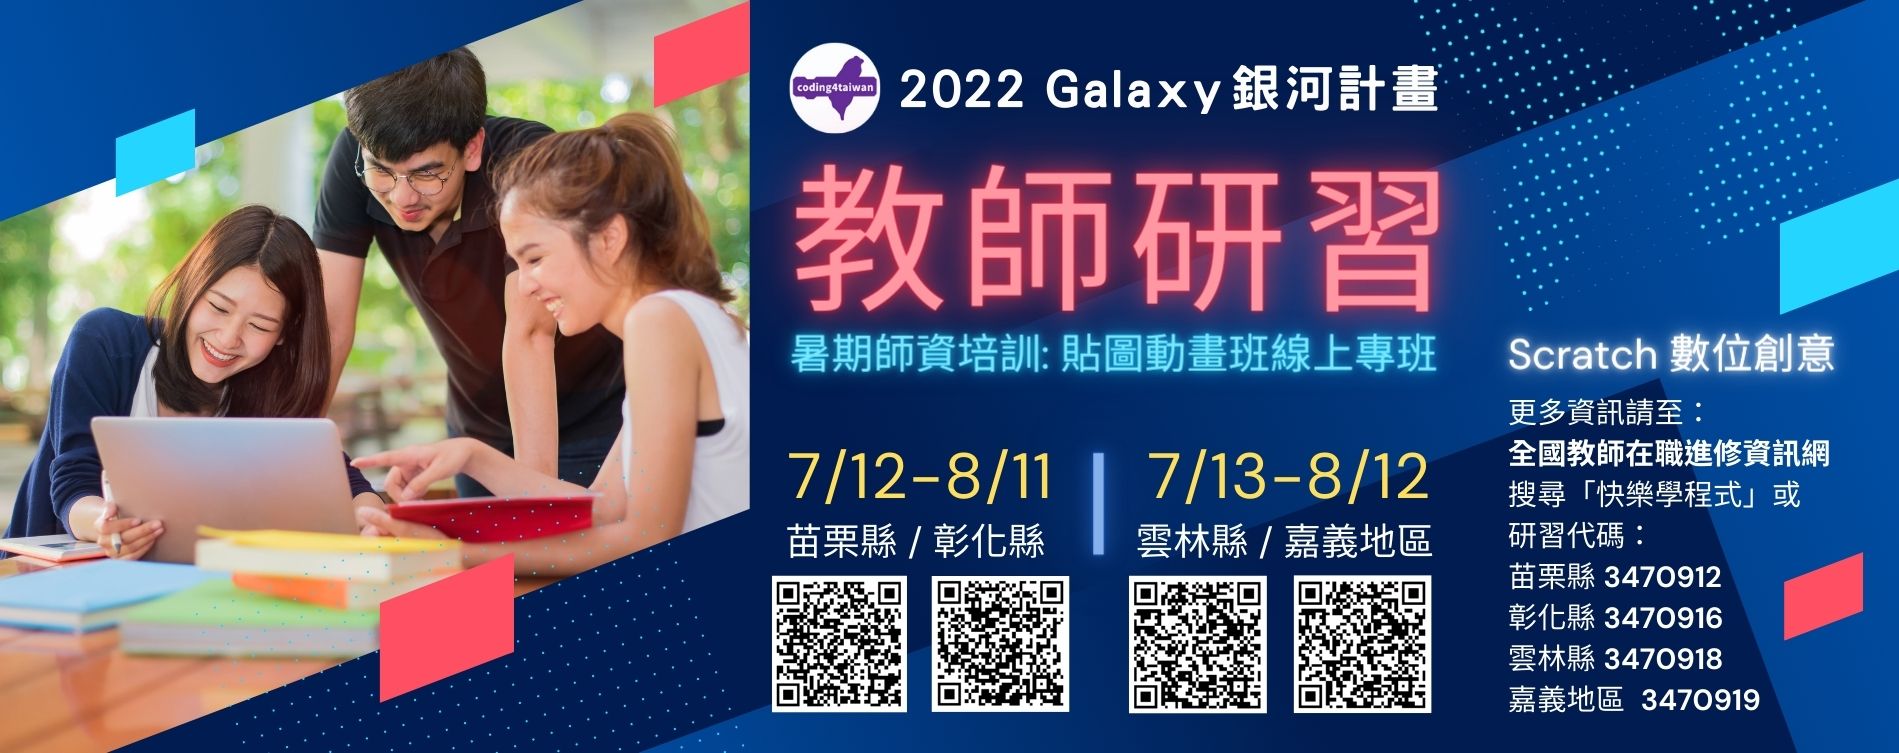 2022程式教師培訓Galaxy計畫_暑期Scratch程式貼圖動畫_線上課程